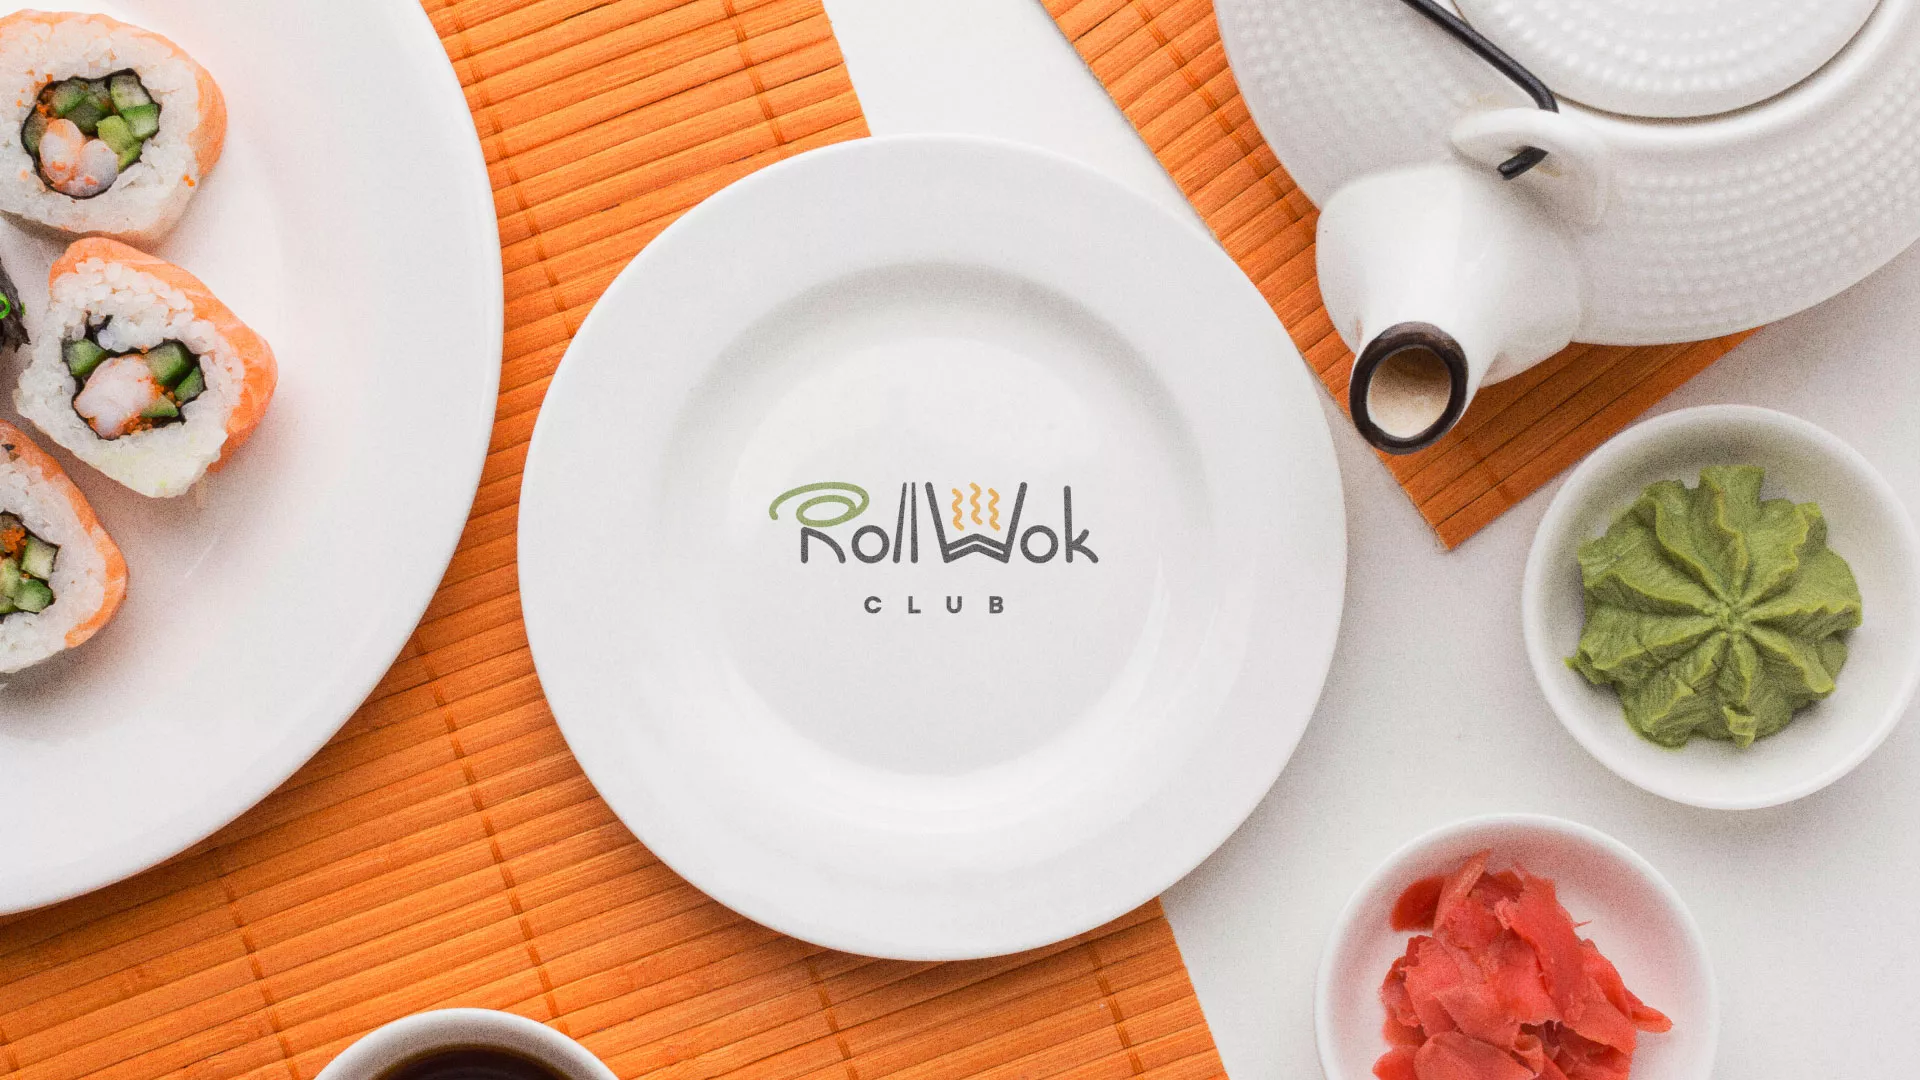 Разработка логотипа и фирменного стиля суши-бара «Roll Wok Club» в Белозерске